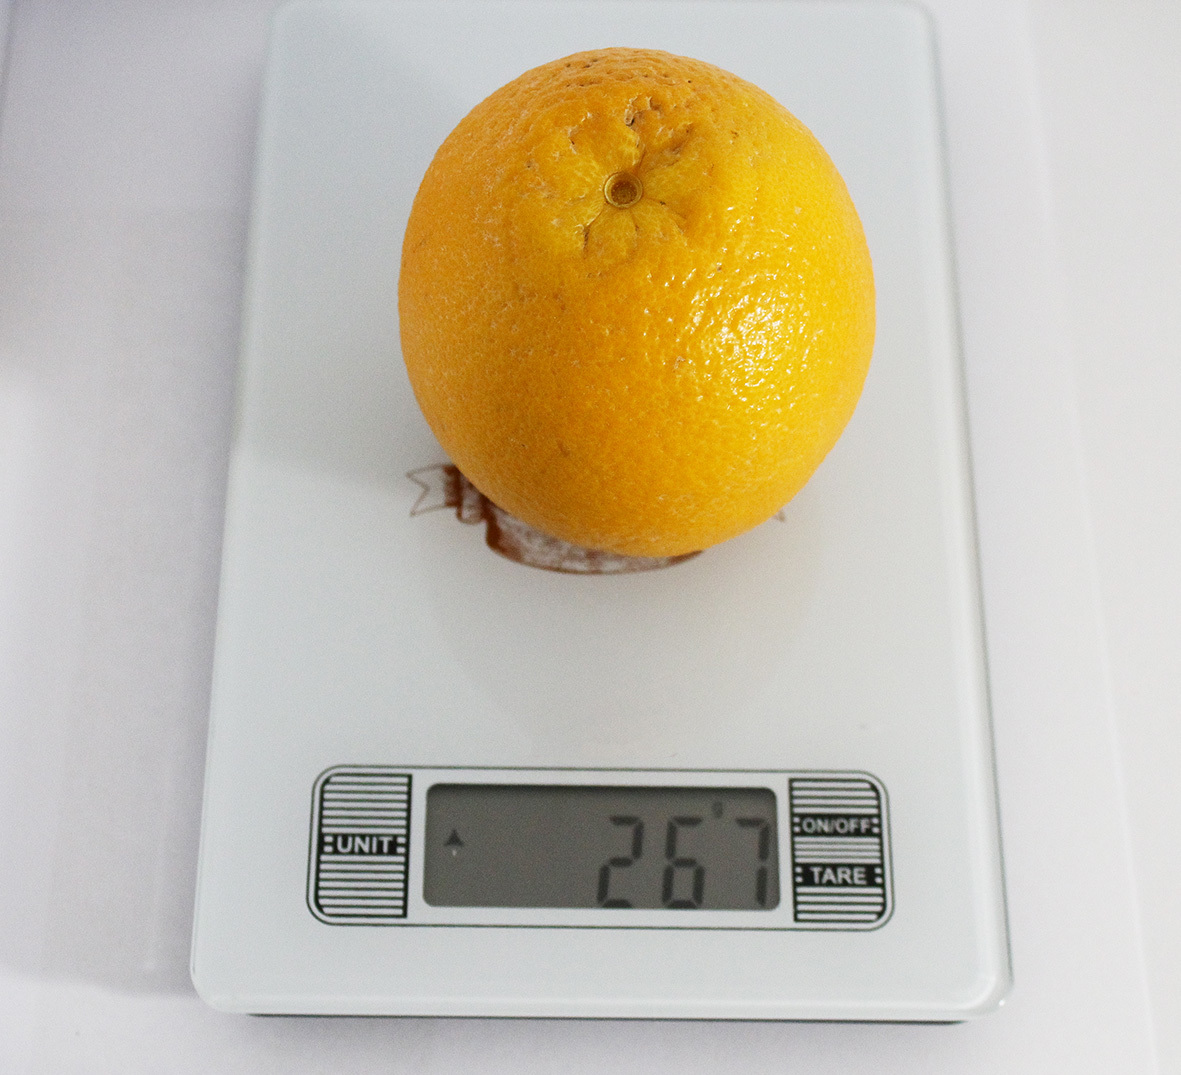 Вес 1 апельсина